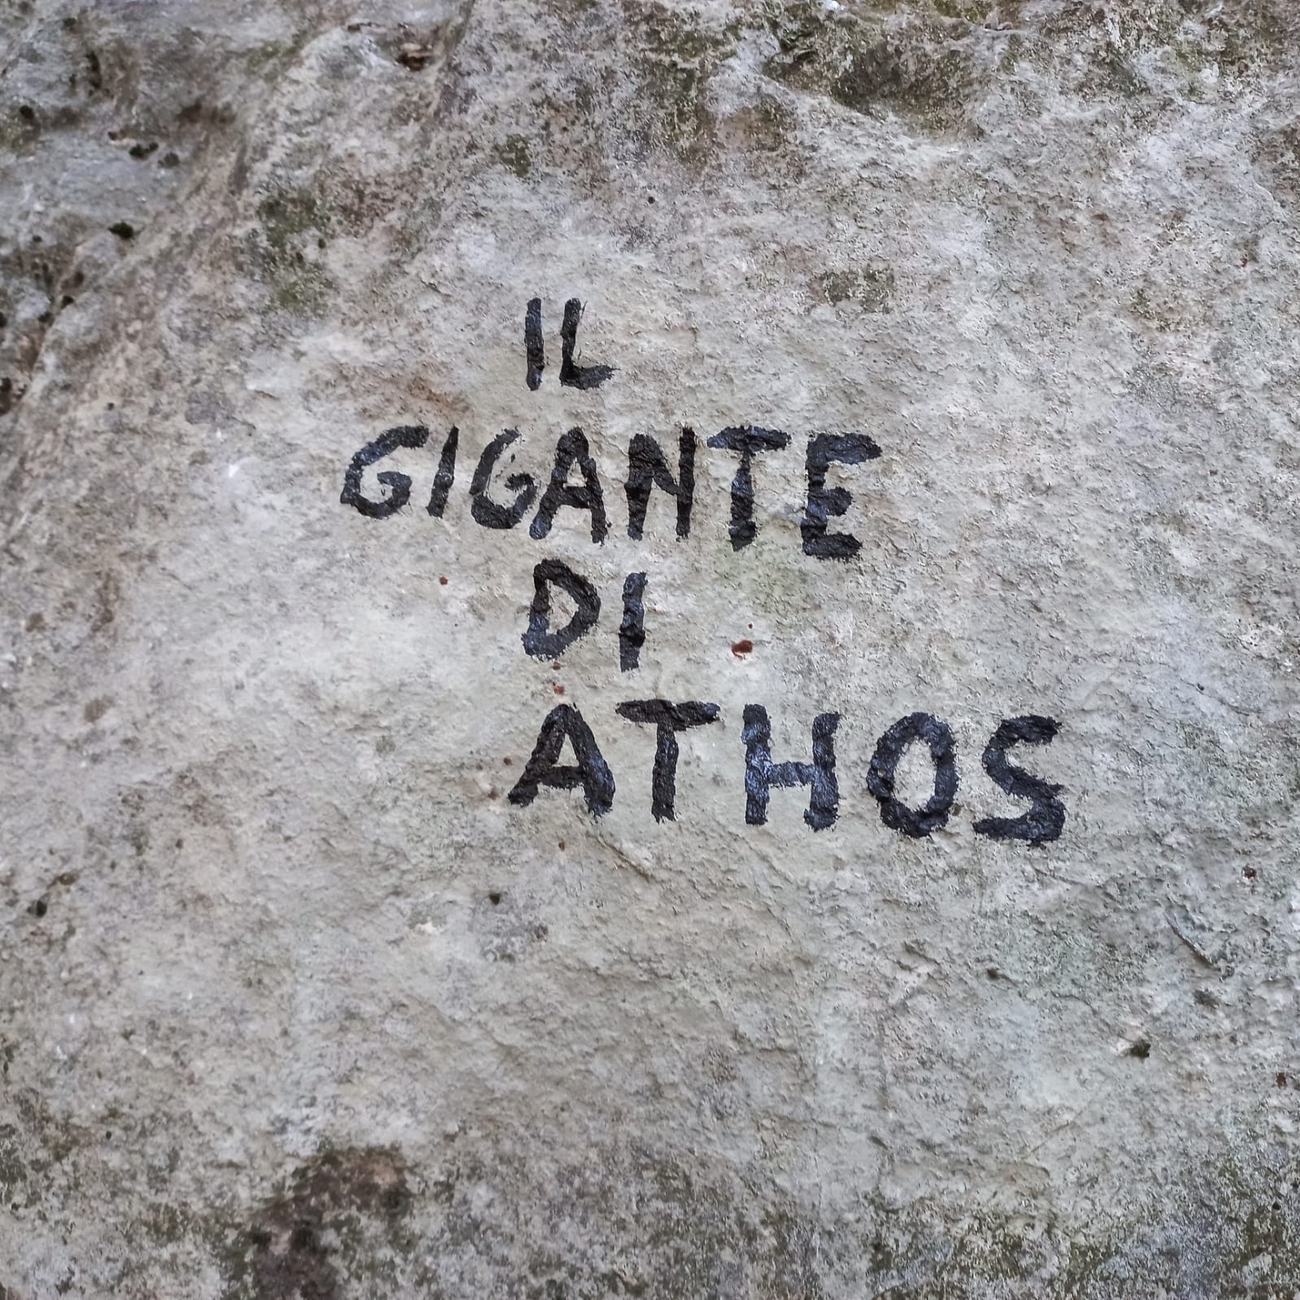 Gigante di Athos, Monte Casale, Valle del Sarca, Marco Bozzetta, Costante Carpella